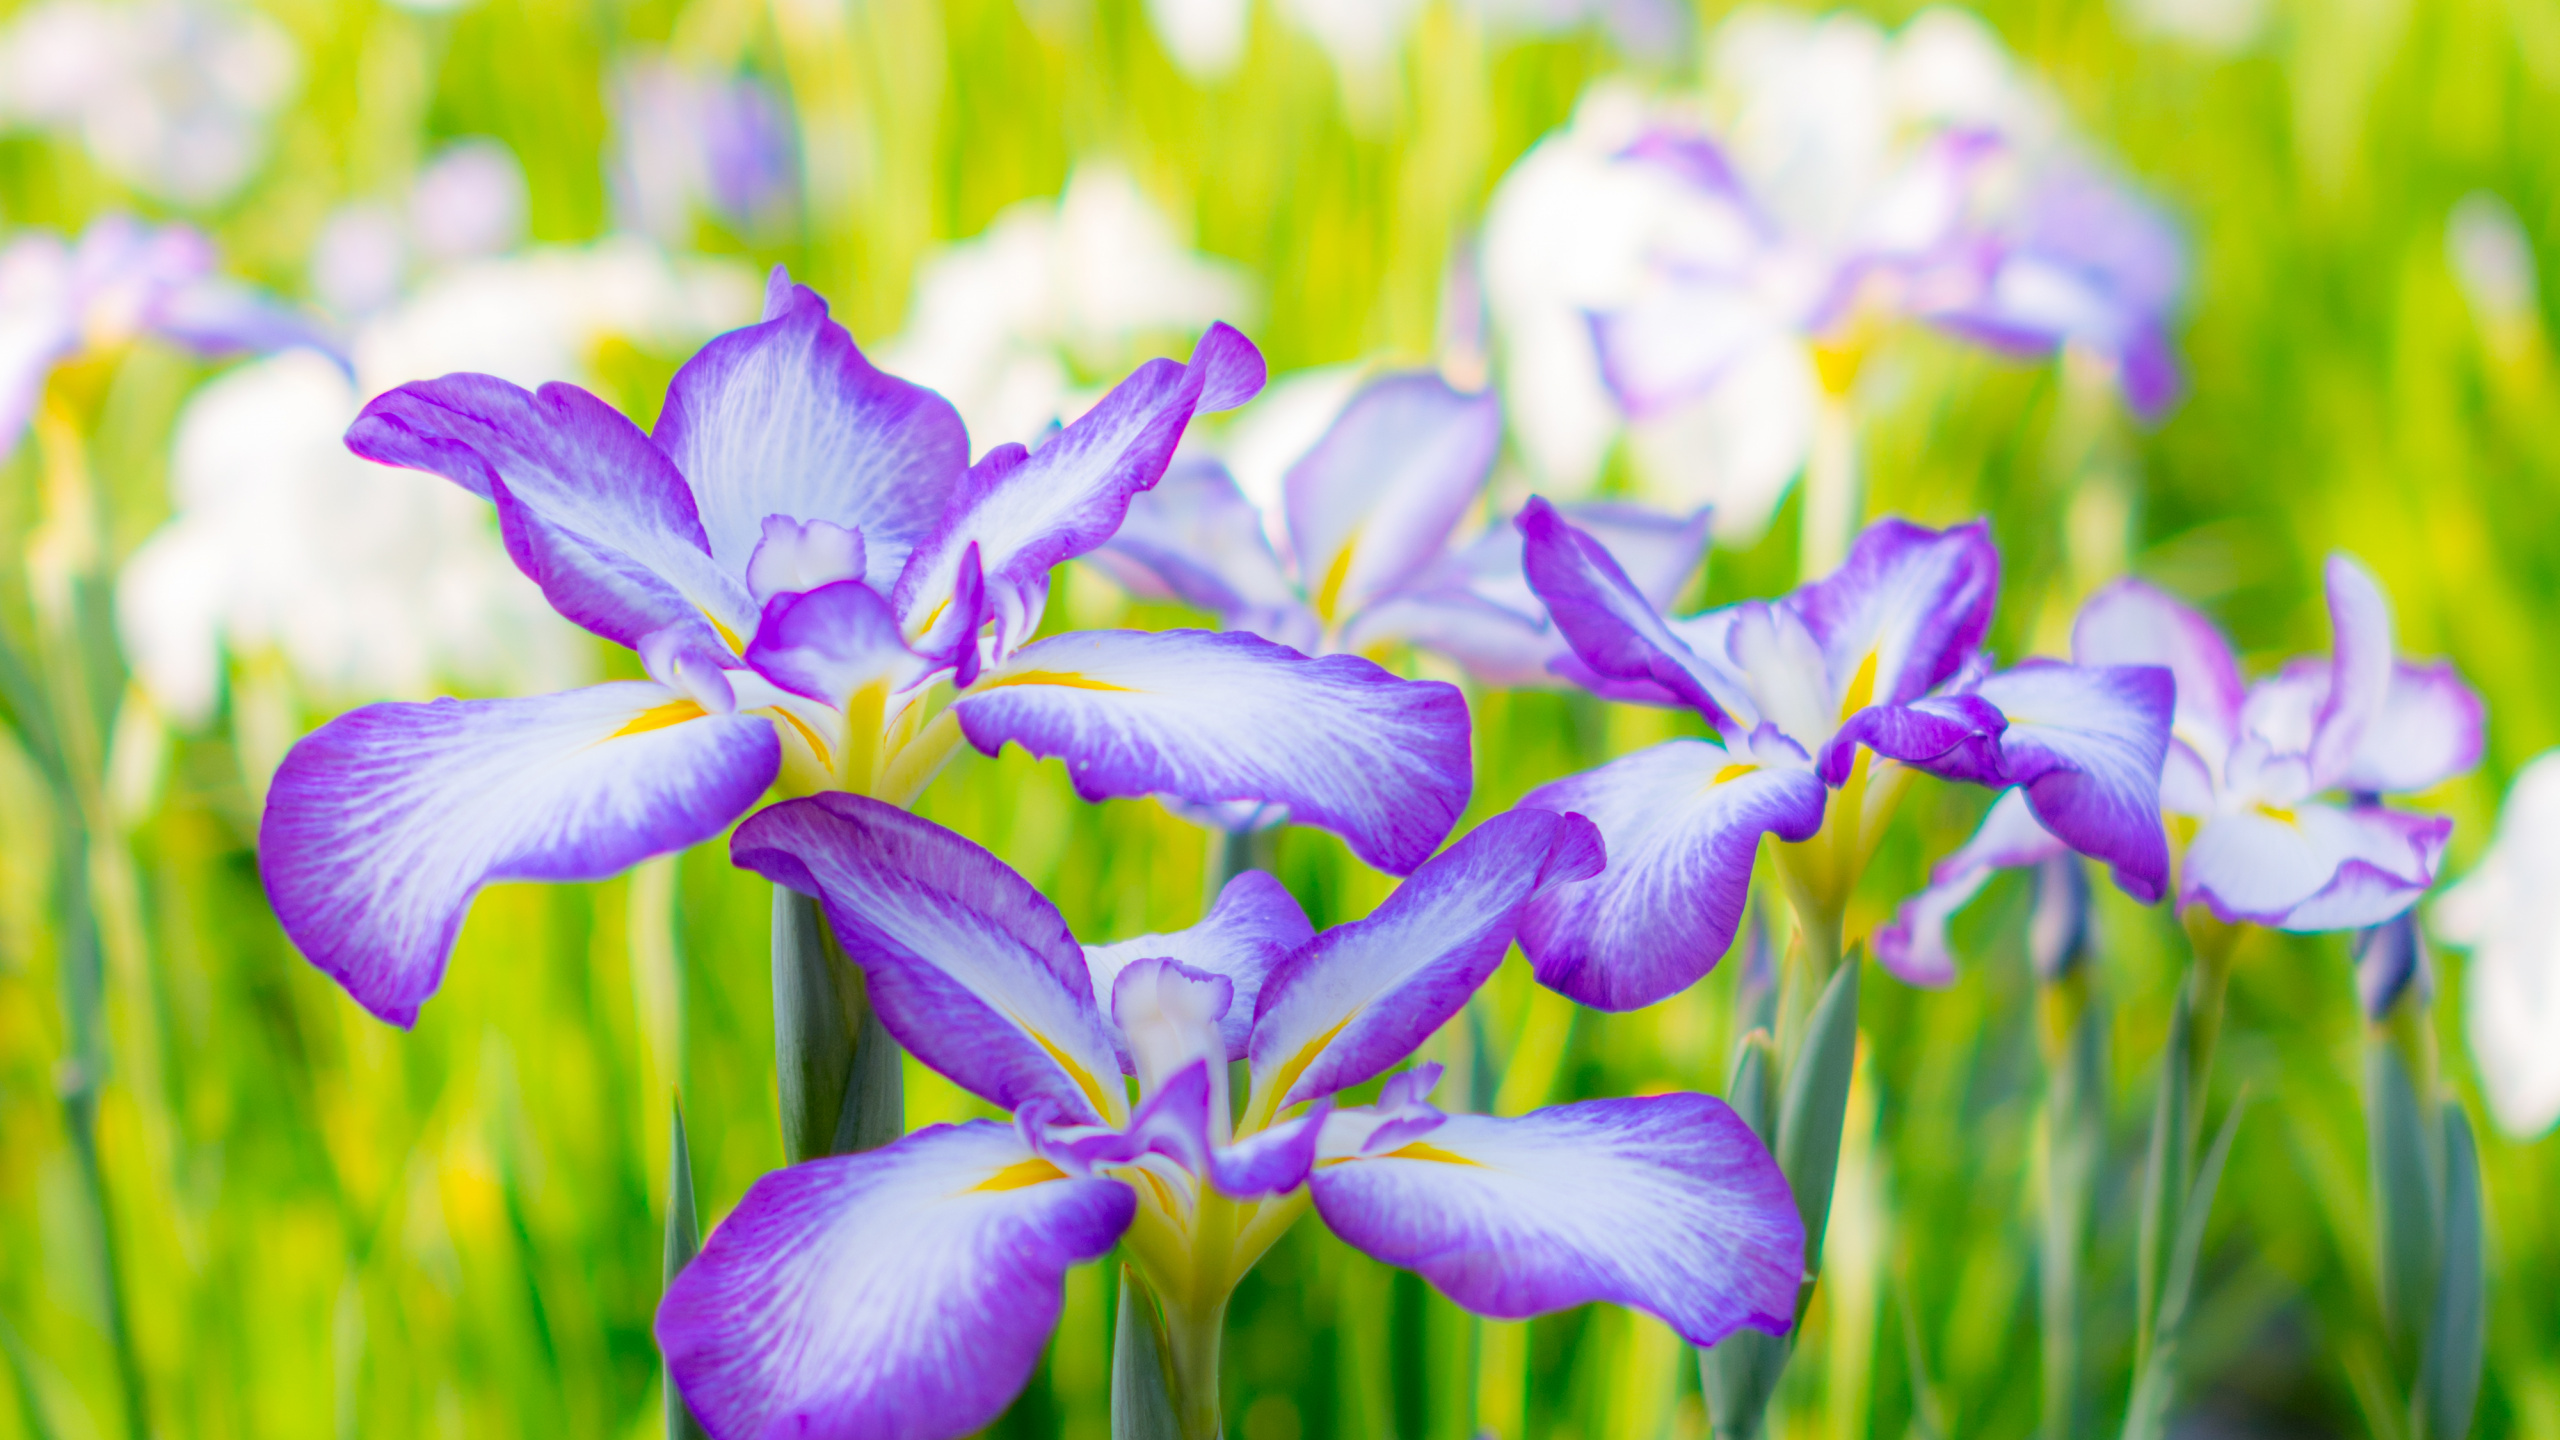 Fleurs Violettes et Blanches Dans L'objectif à Basculement. Wallpaper in 2560x1440 Resolution